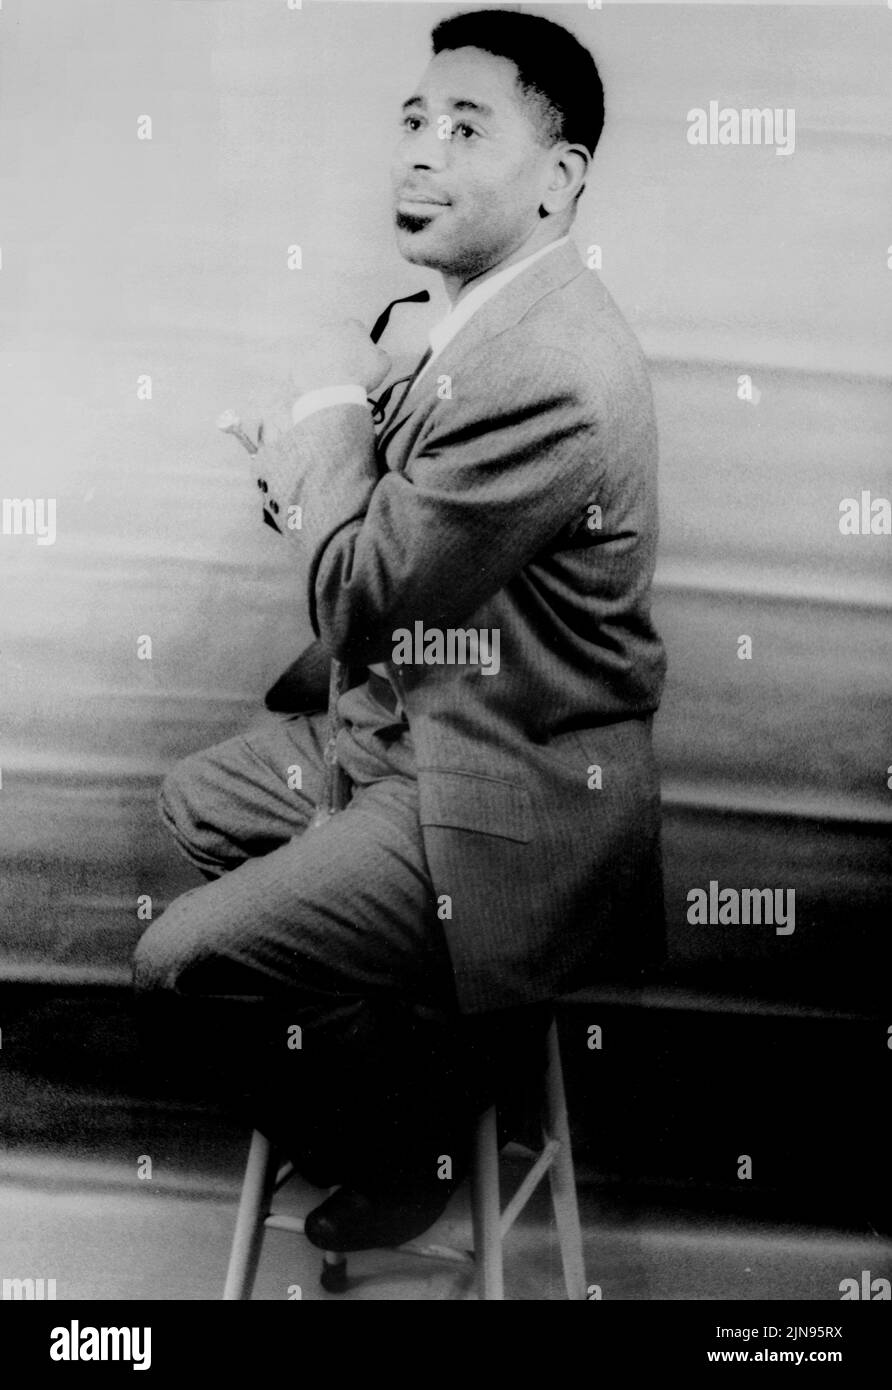 USA - 02 Dez 1955 - Porträt des Jazz Musiker Dizzy Gillespie (John birks 1917-1993) - Foto von Carl Van Vechten/Atlas Foto Archiv Stockfoto